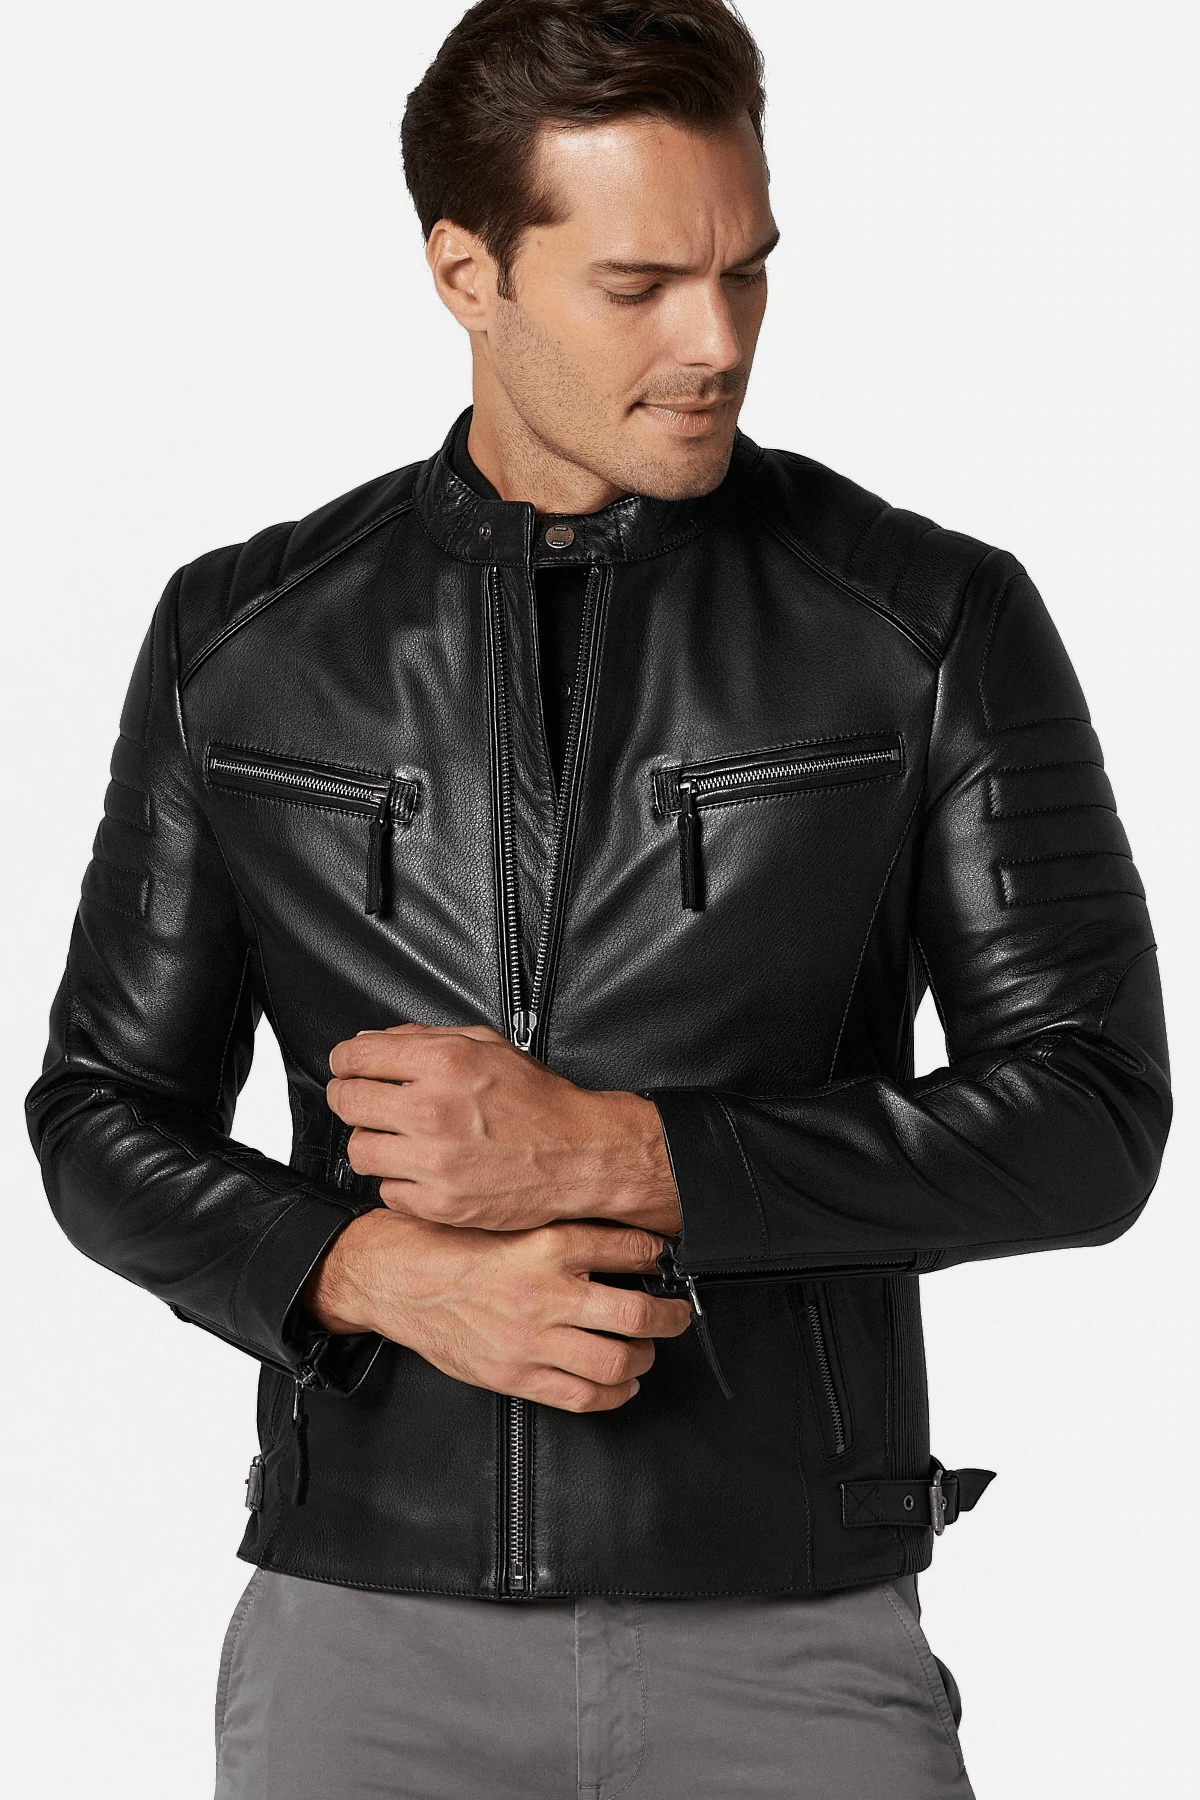 Bosh X Black Leather Jacket - AirBorne Jacket